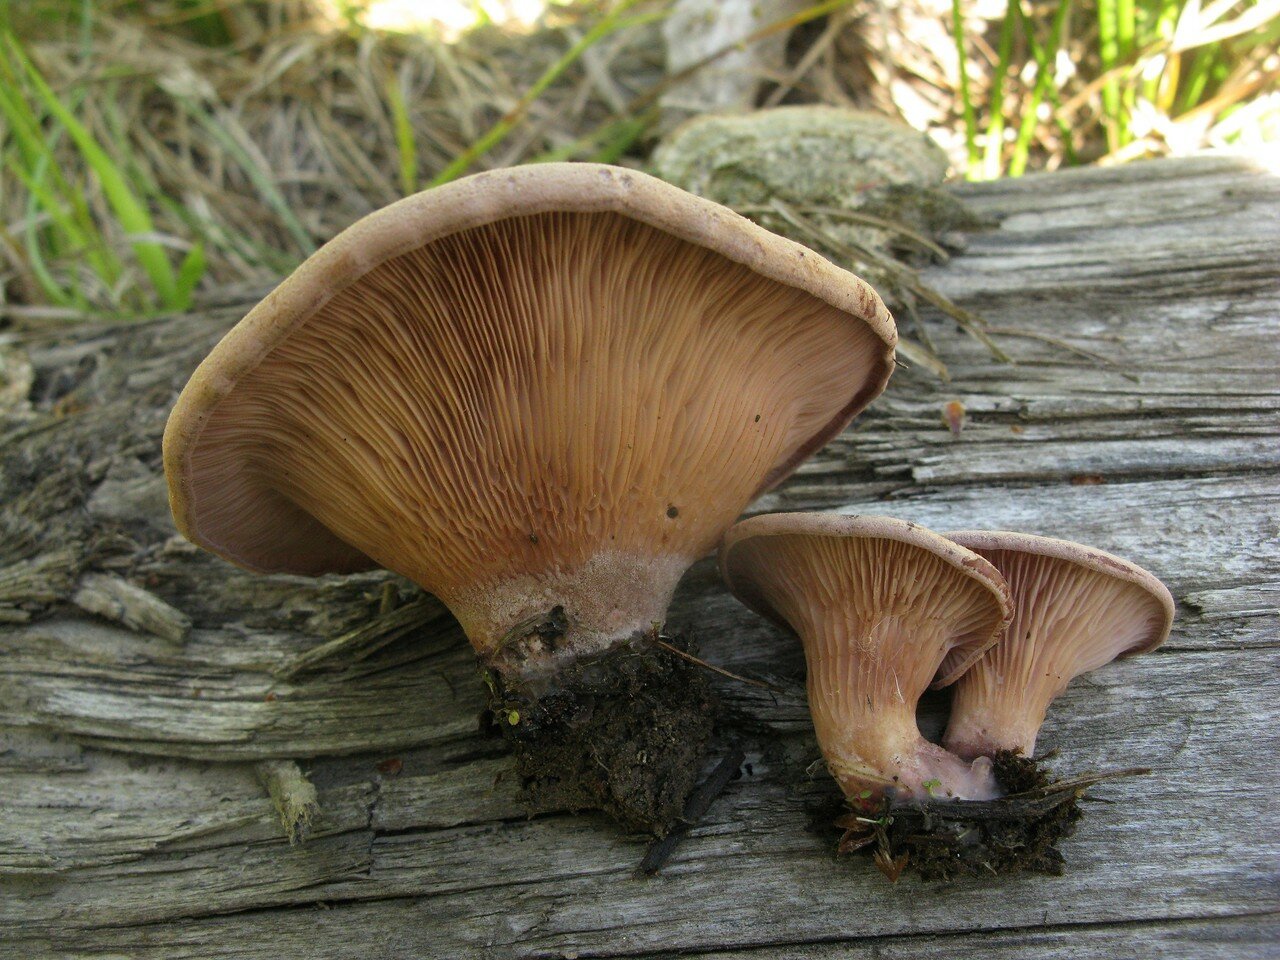 Мутинус собачий (mutinus caninus): фото, описание, лечебные свойства и использование в медицине гриба из красной книги